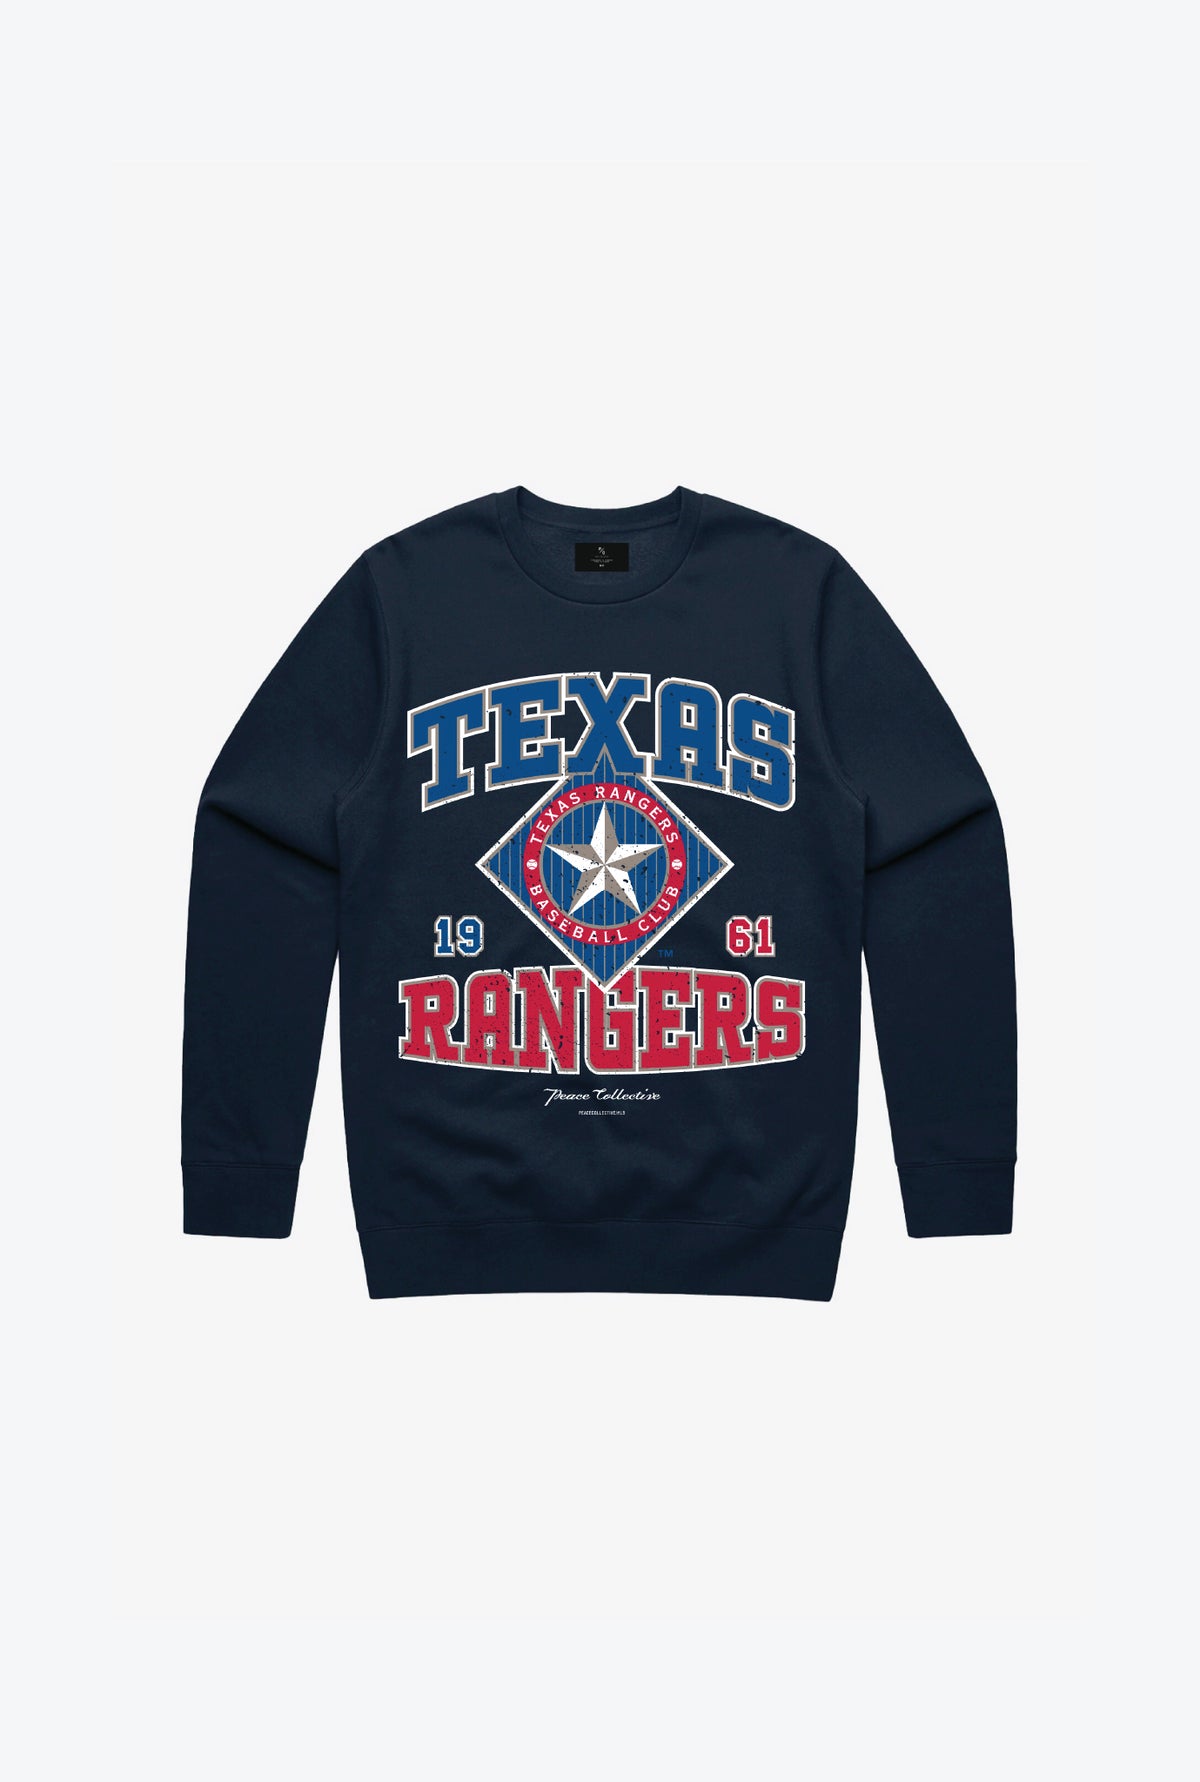 Texas Rangers Vintage Kids Crewneck - Navy